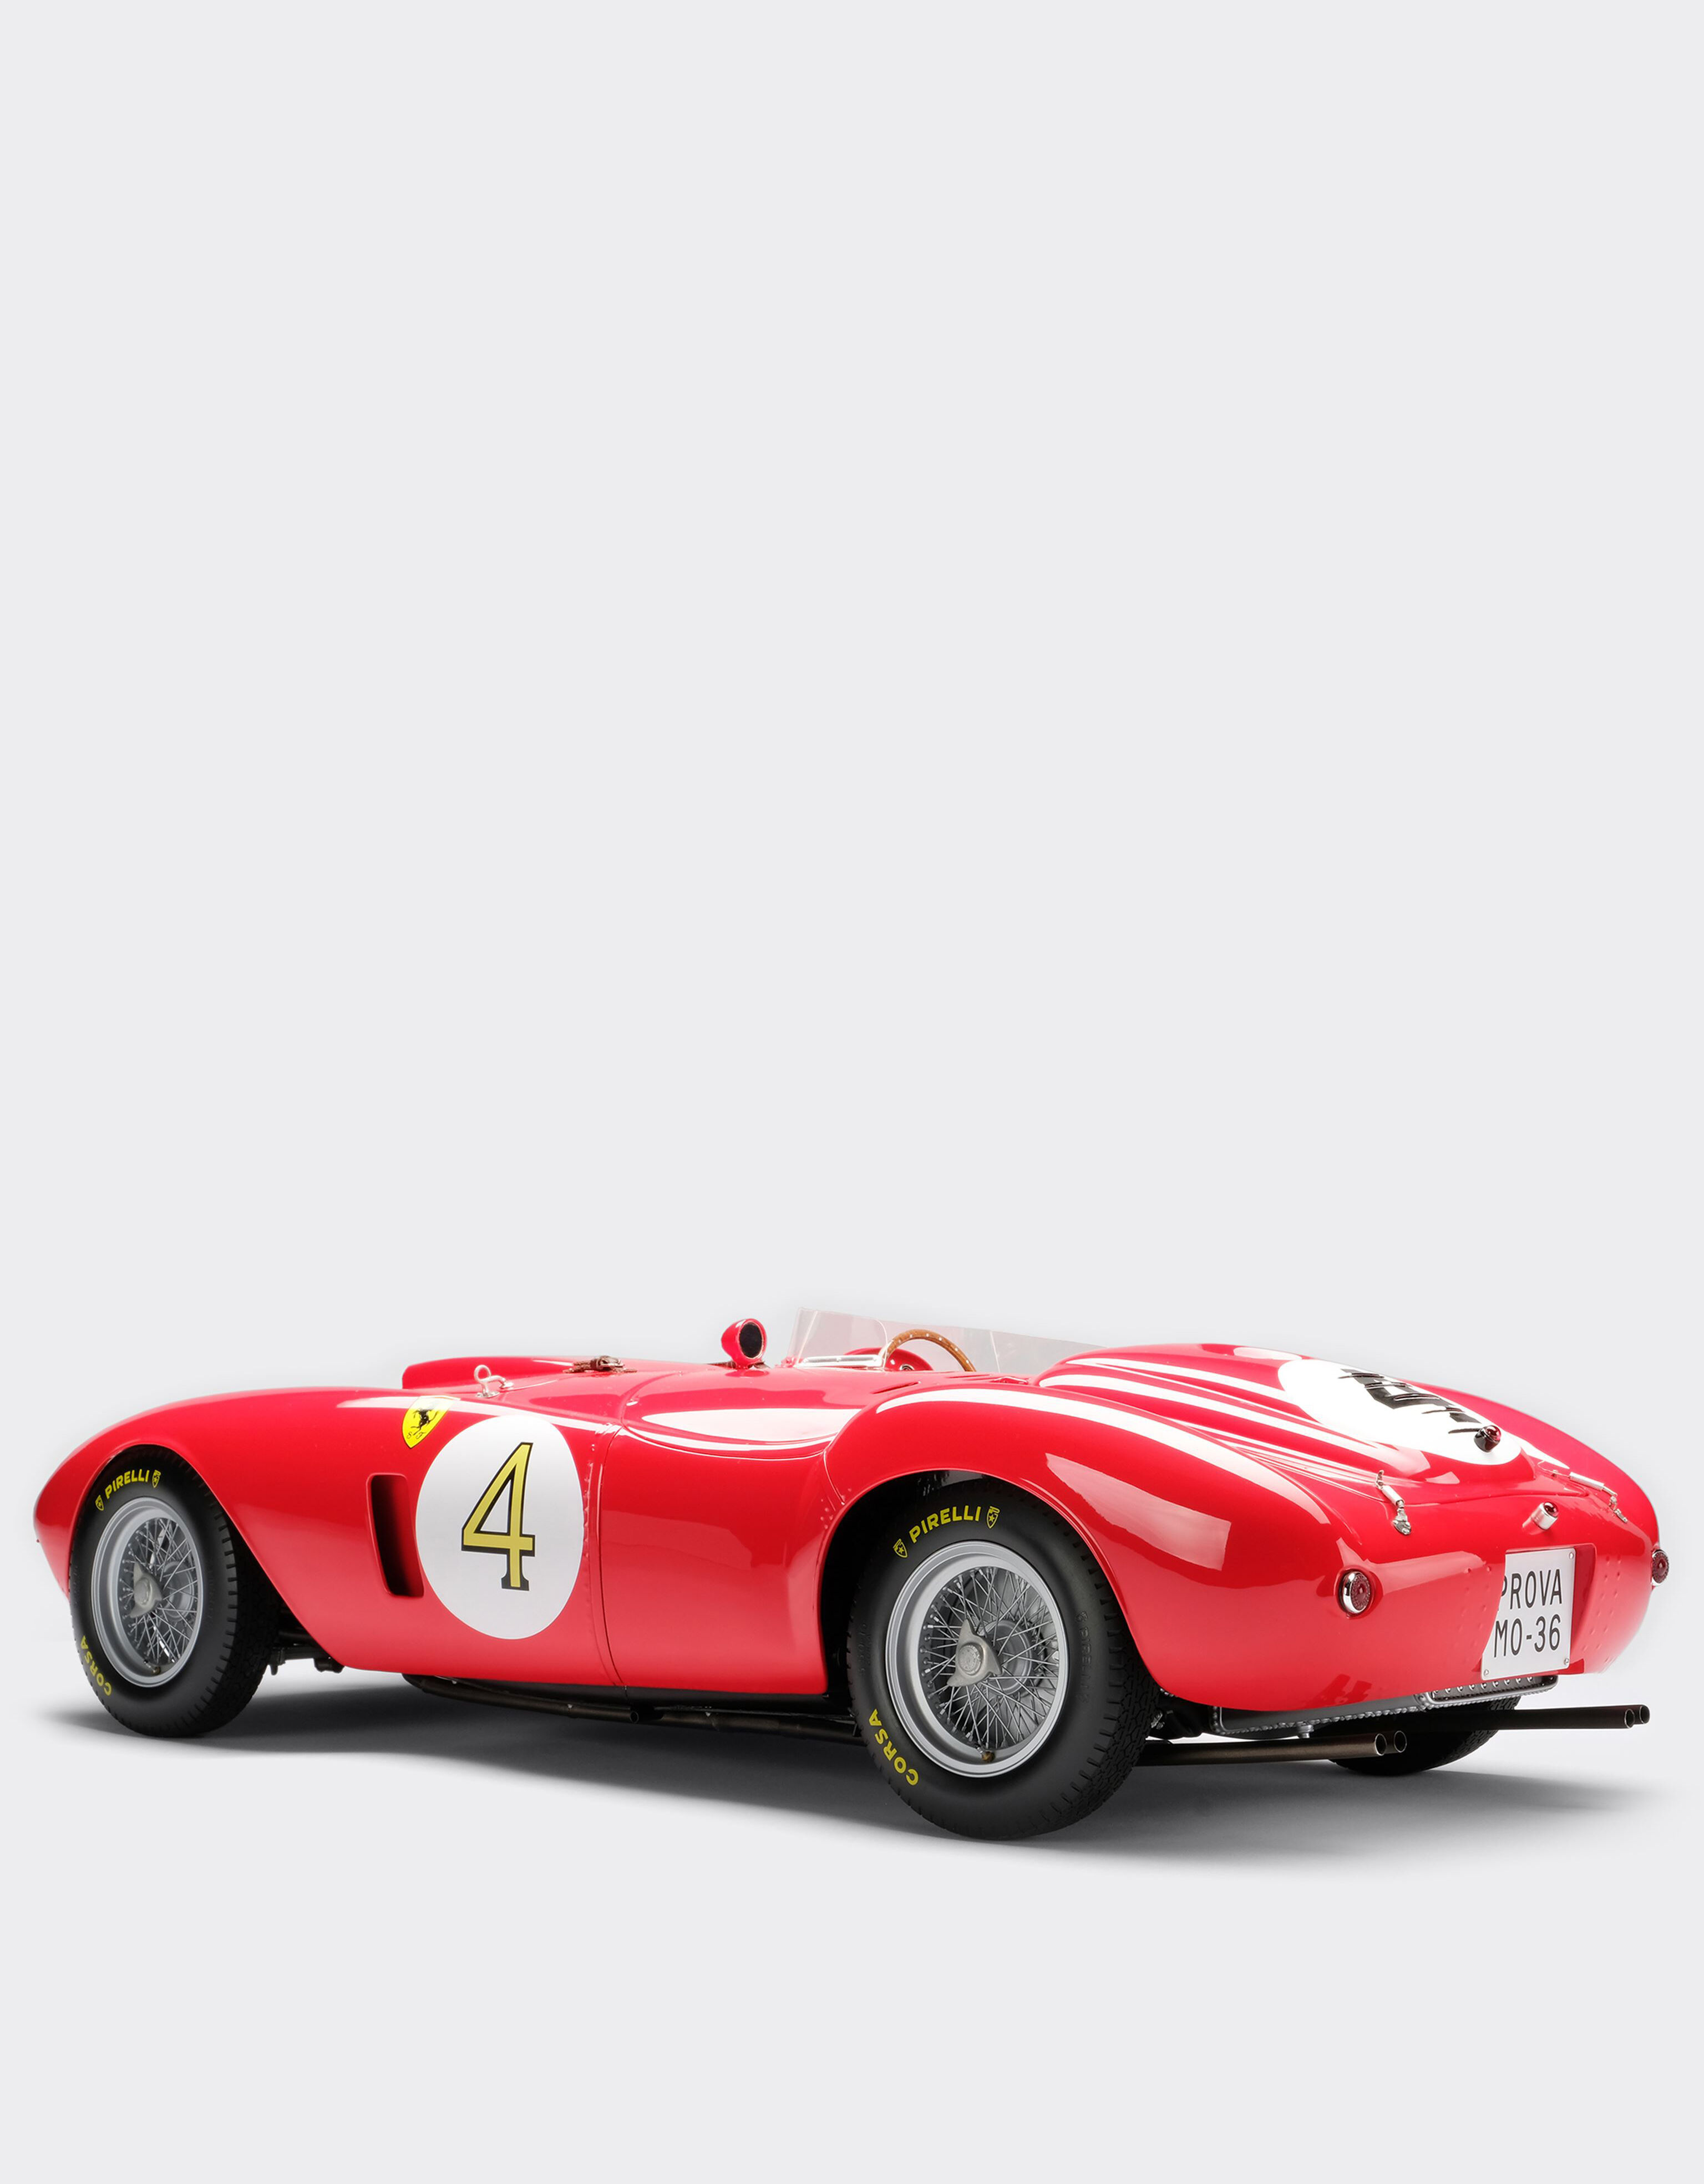 Ferrari Ferrari 375 Plus 1st Le Mans model in 1:8 scale Red L5241f